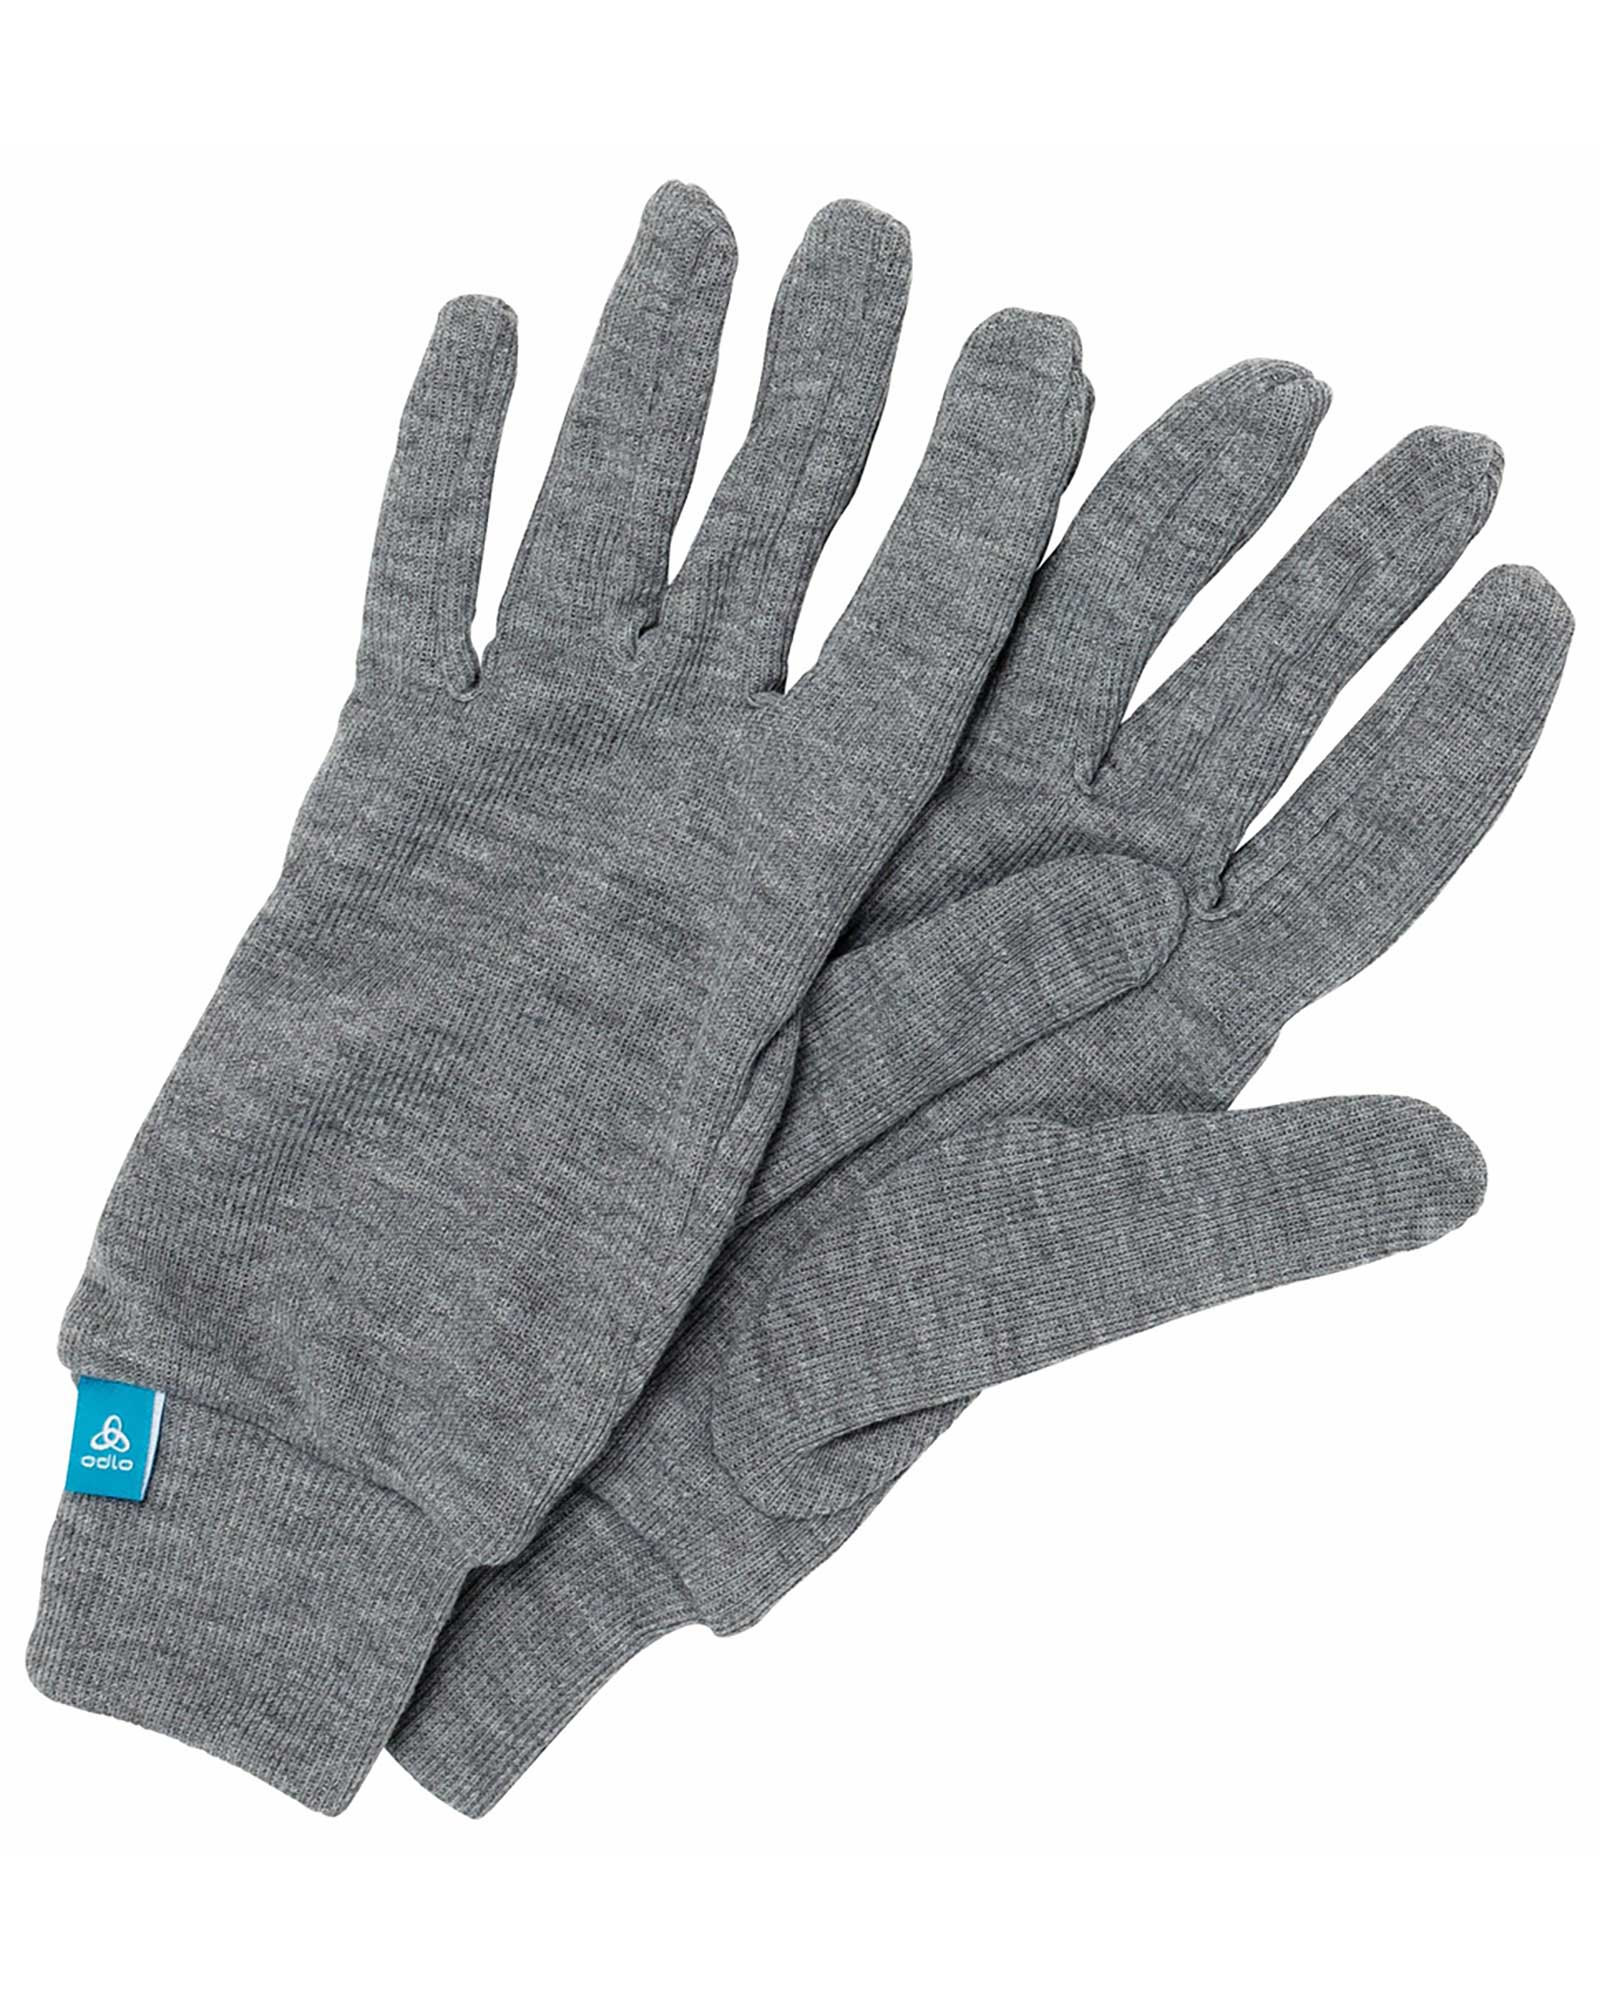 Odlo Active Warm Eco Kids’ Gloves - Steel Grey Melange S